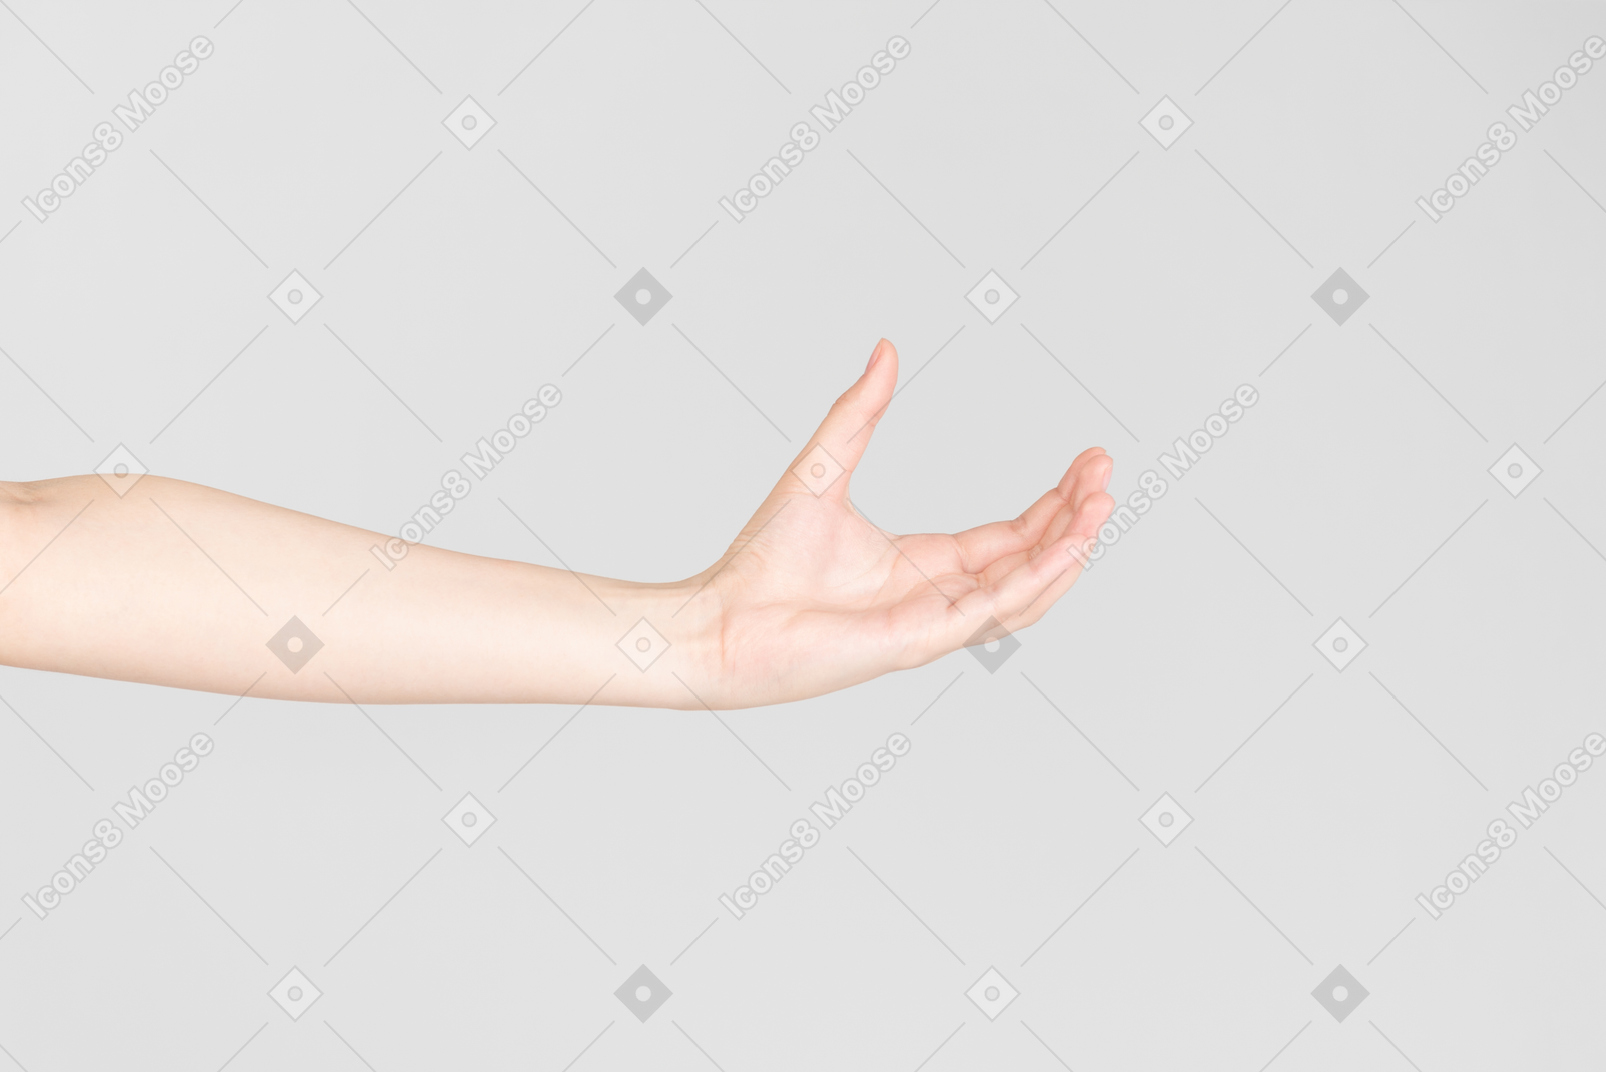 Sguardo laterale della mano femminile con la mano aperta